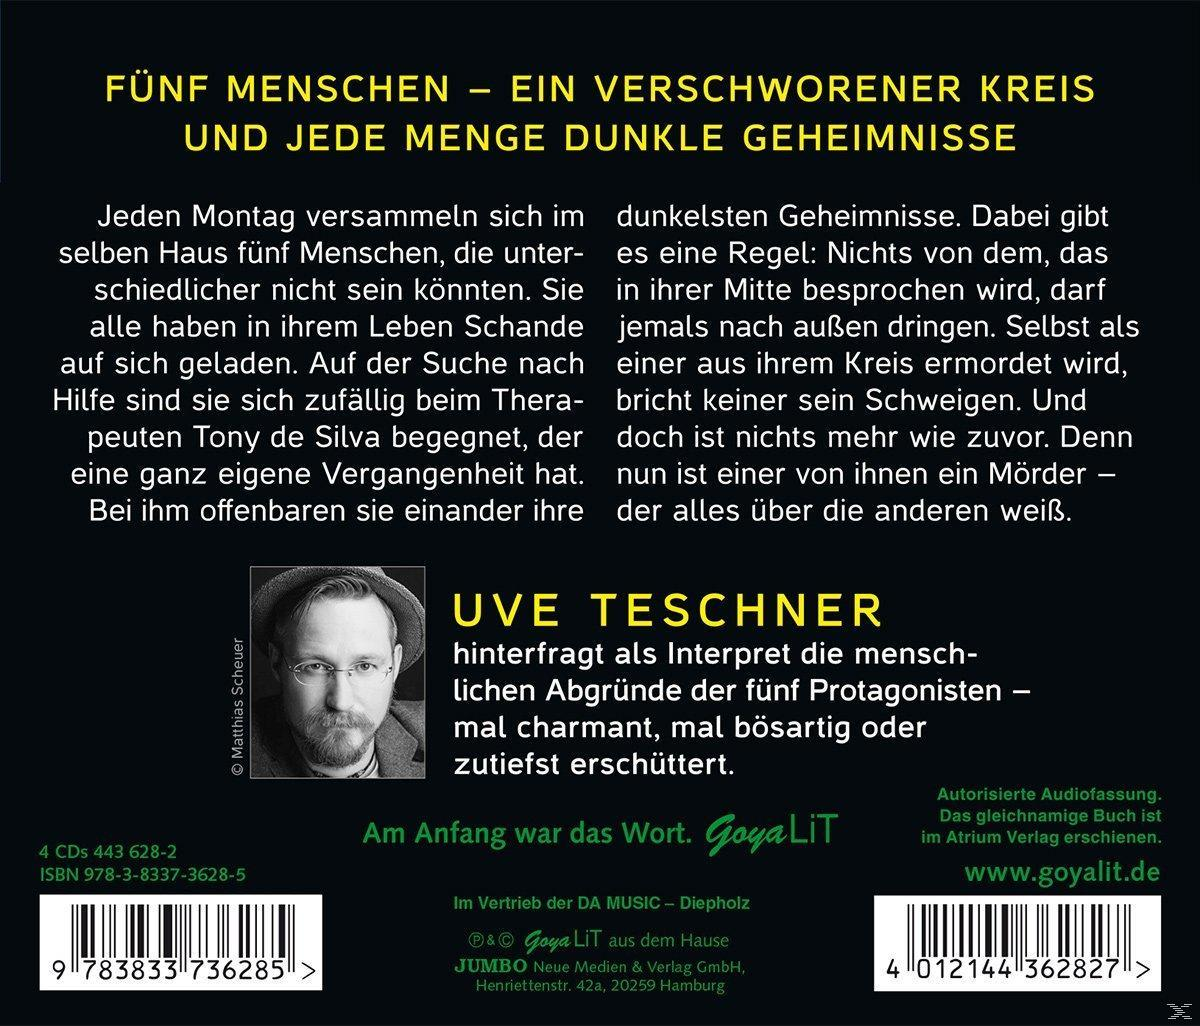 der Die - Teschner Schande Lebenden (CD) - Uve